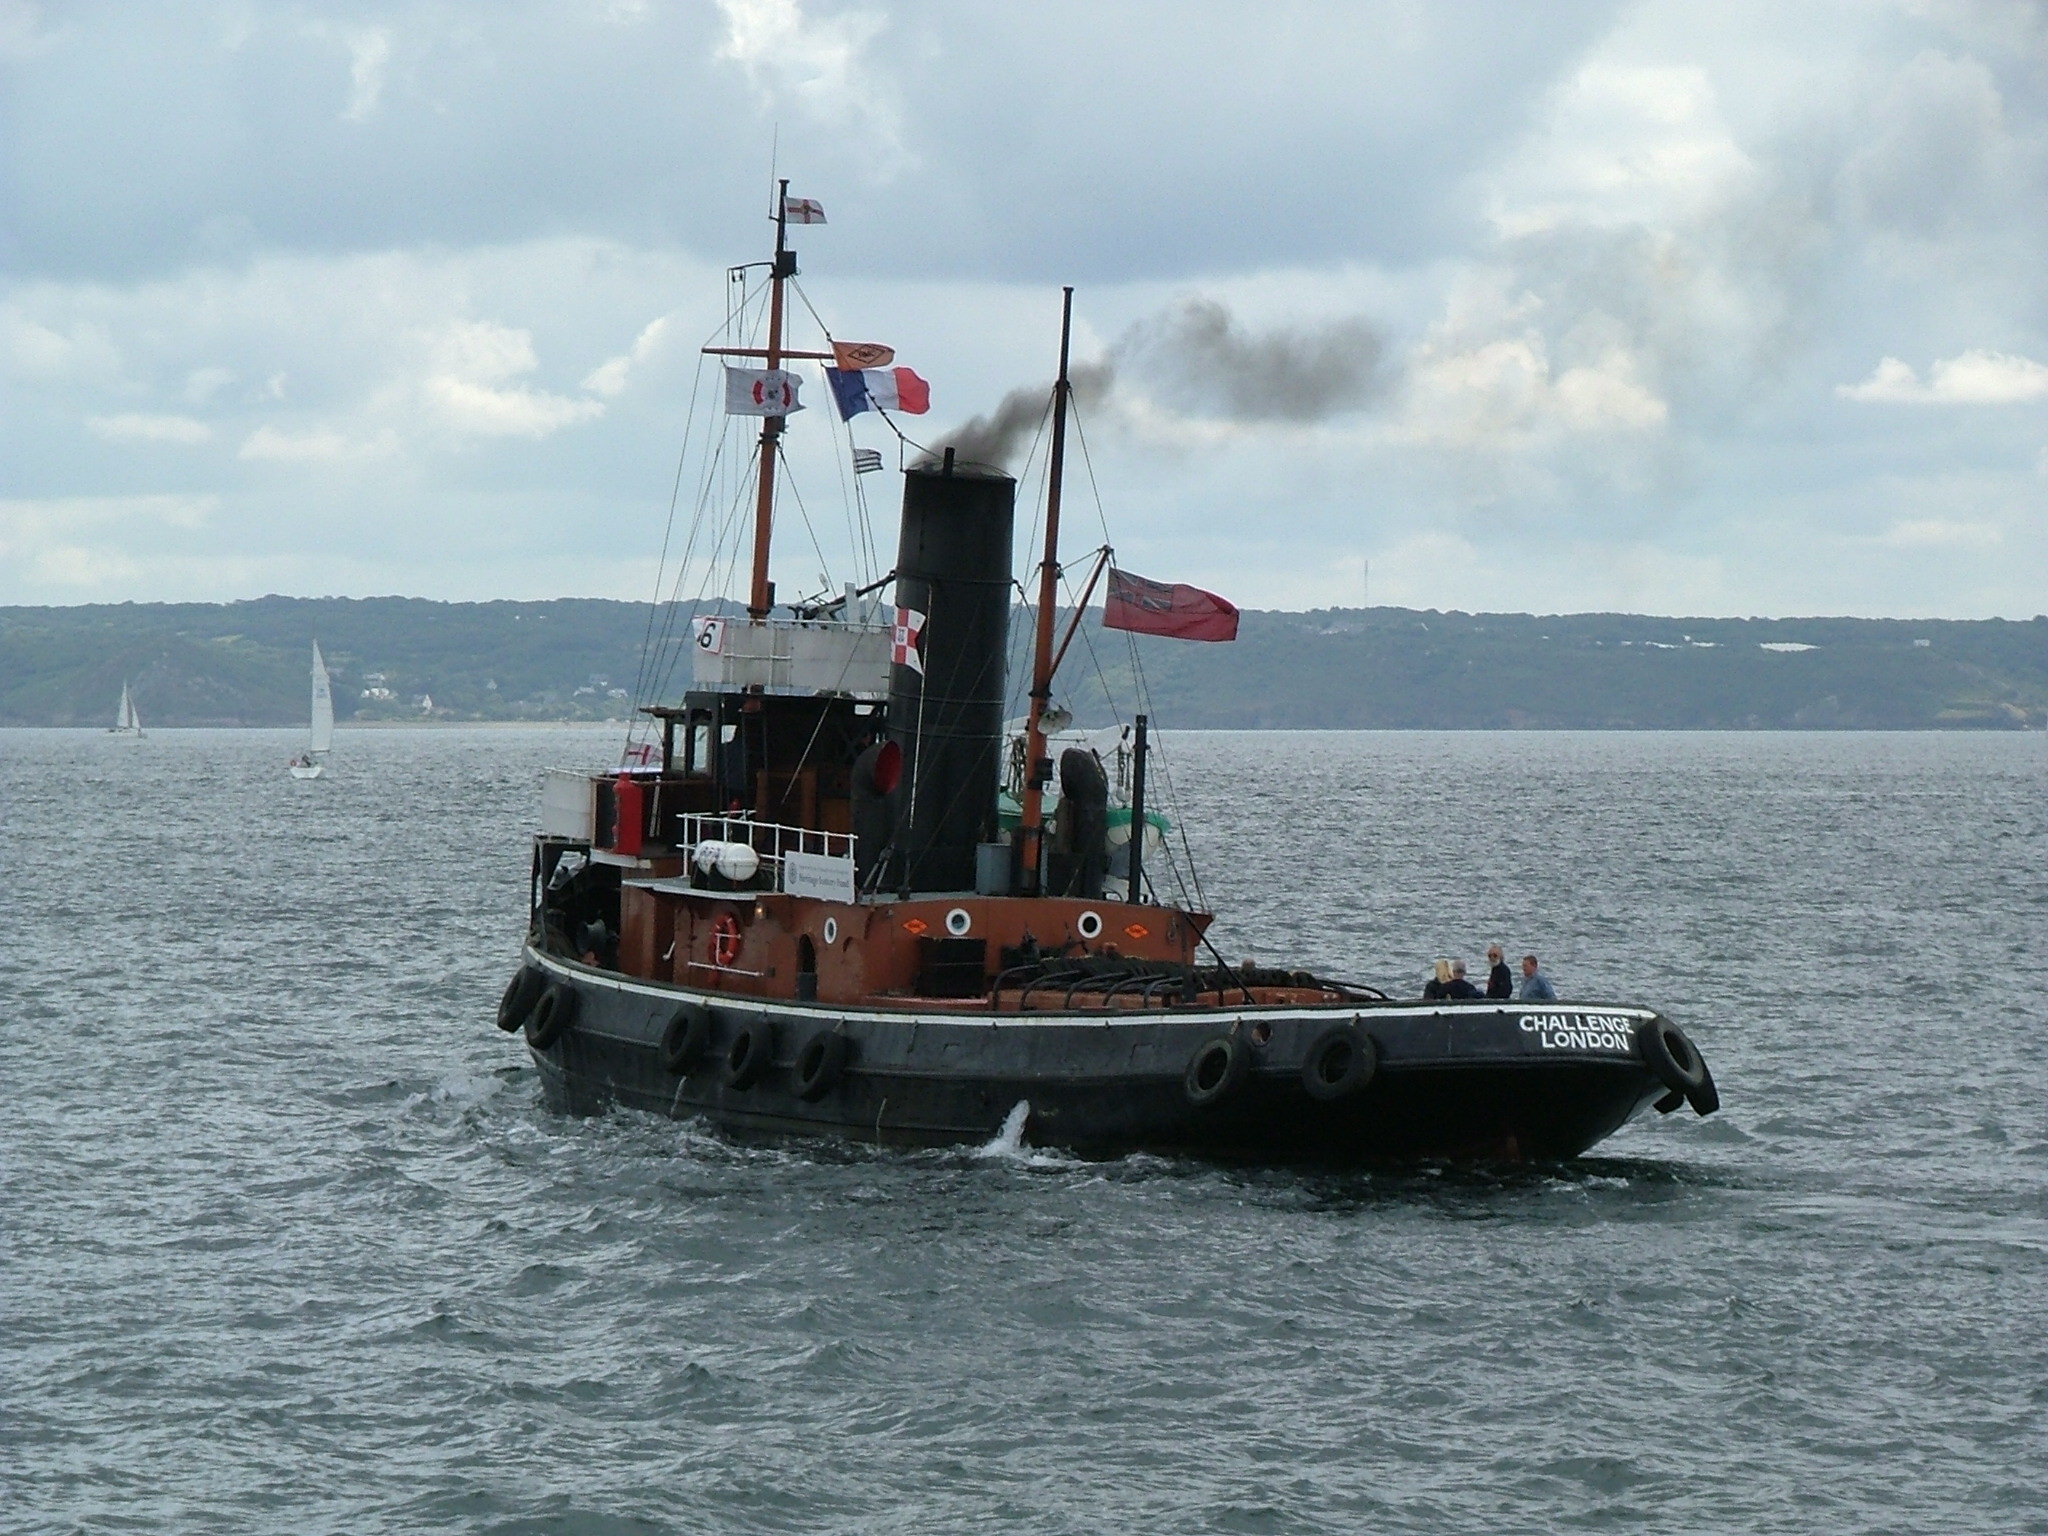 Le remorqueur à vapeur – Brest 2004